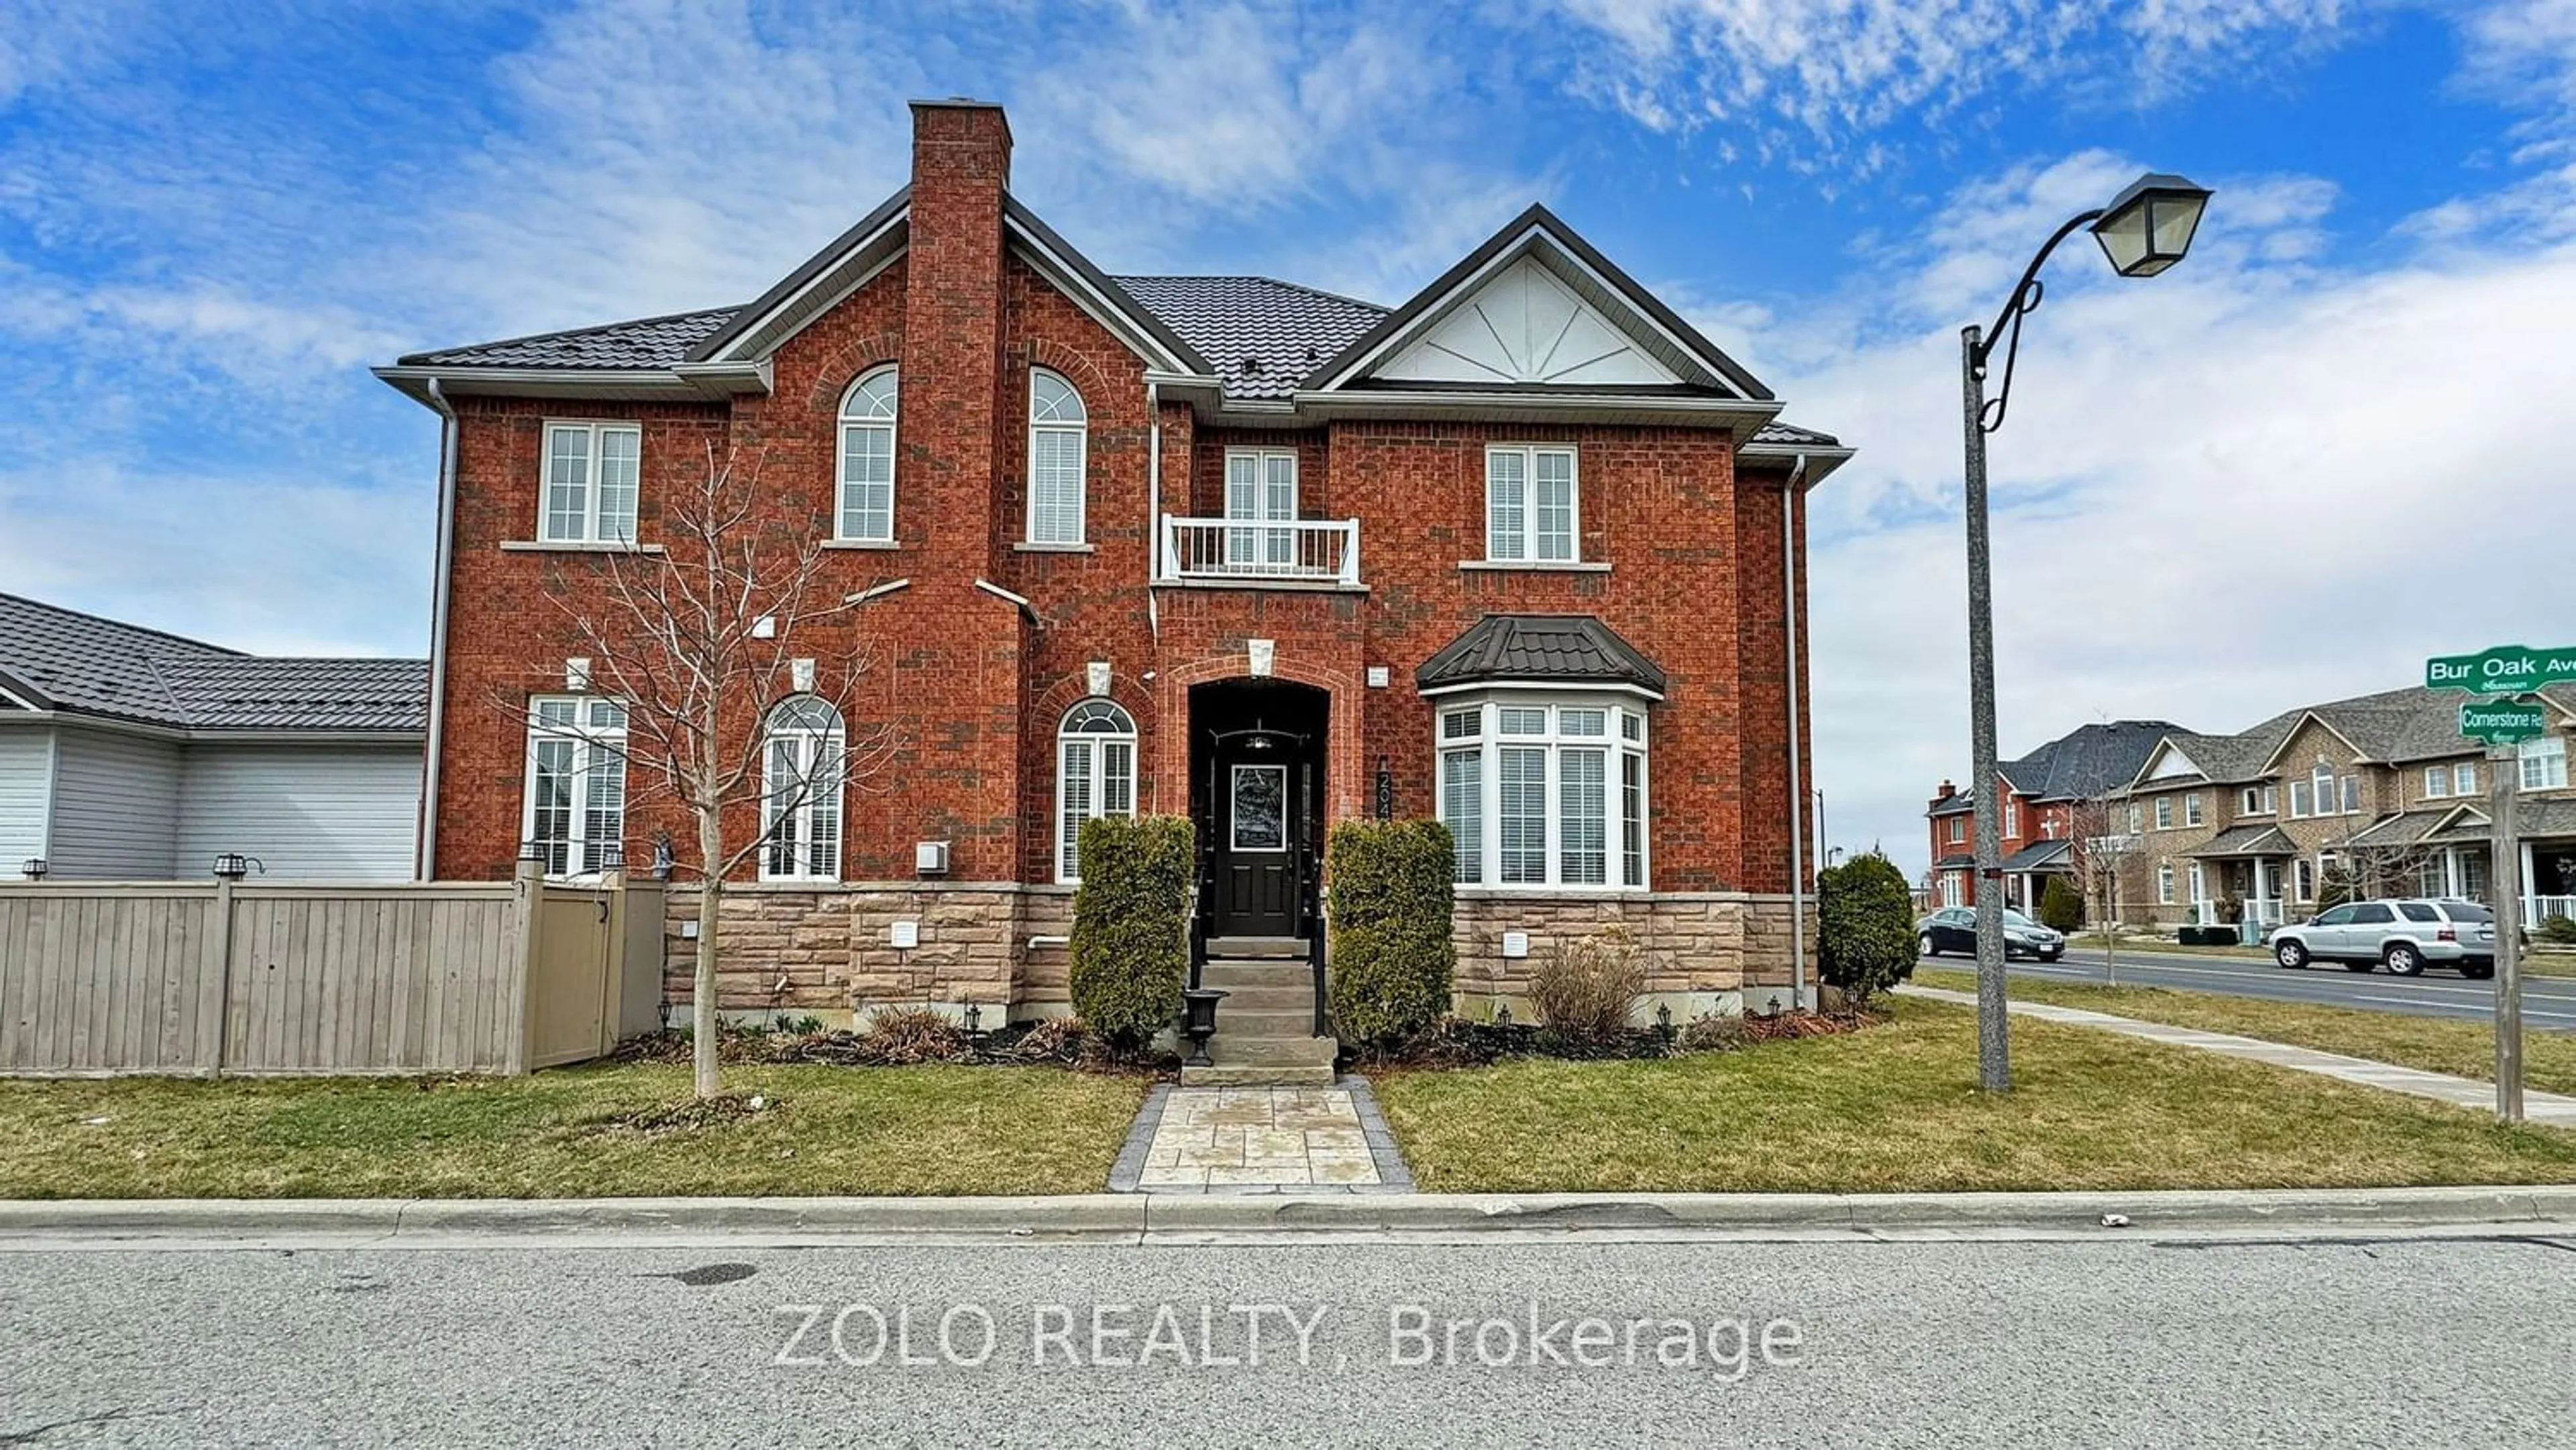 Home with brick exterior material for 2041 Bur Oak Ave, Markham Ontario L6E 1X3